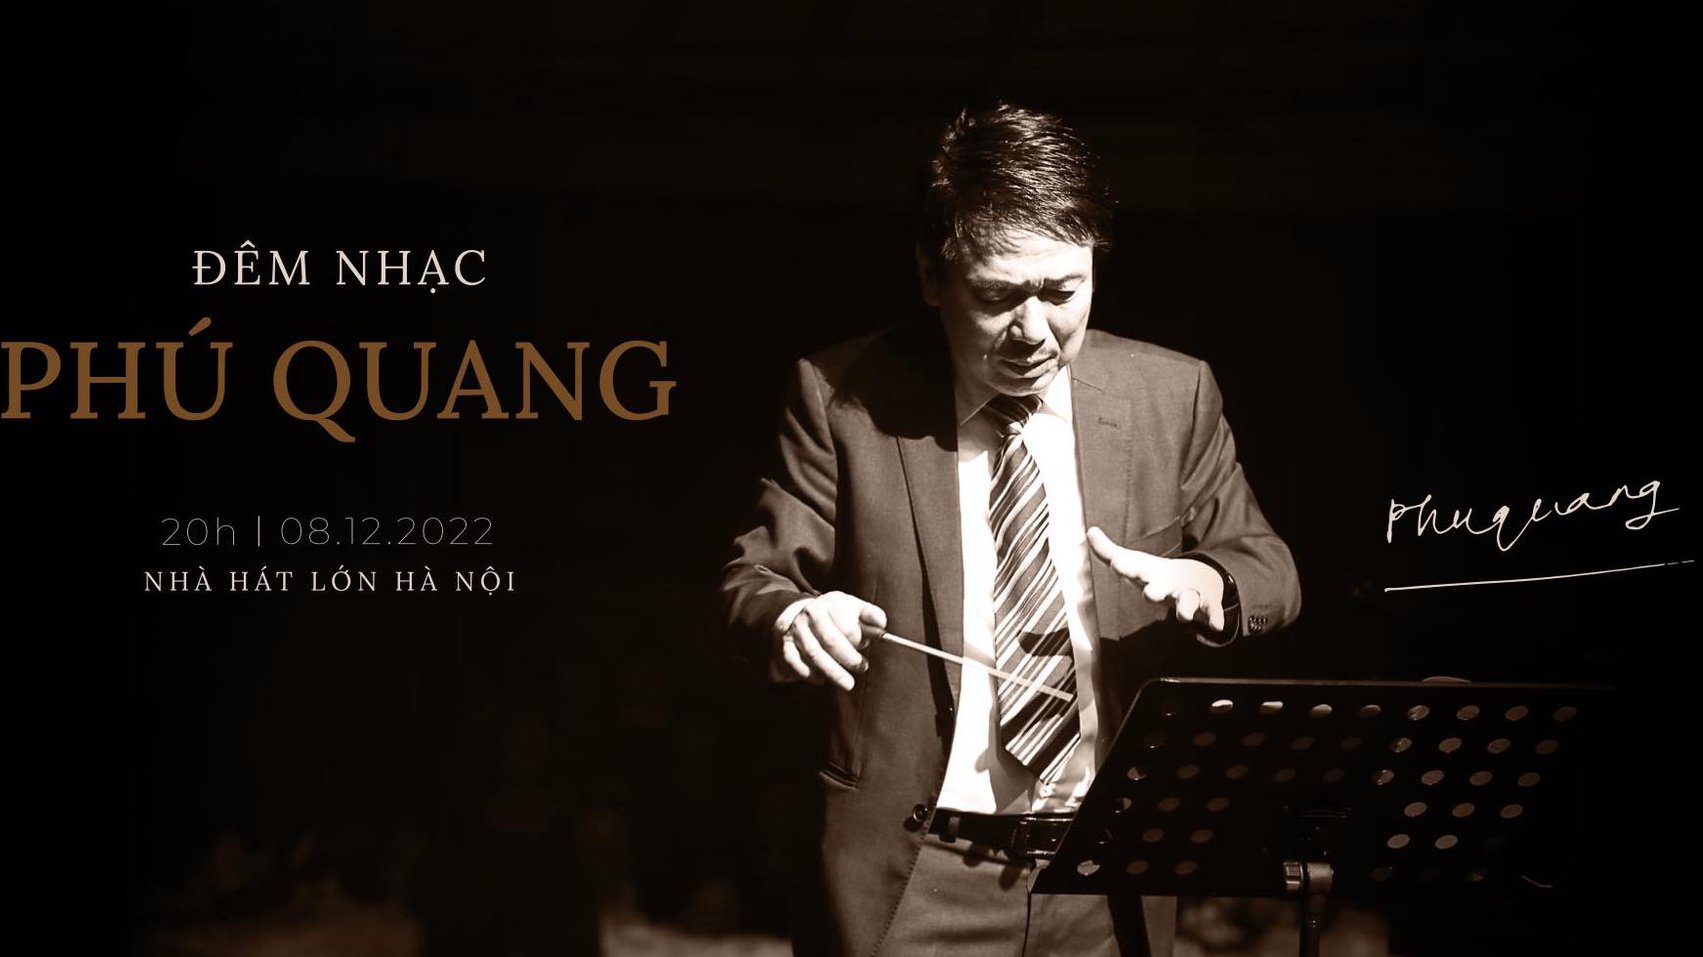 Đêm nhạc miễn phí tưởng nhớ nhạc sĩ Phú Quang 